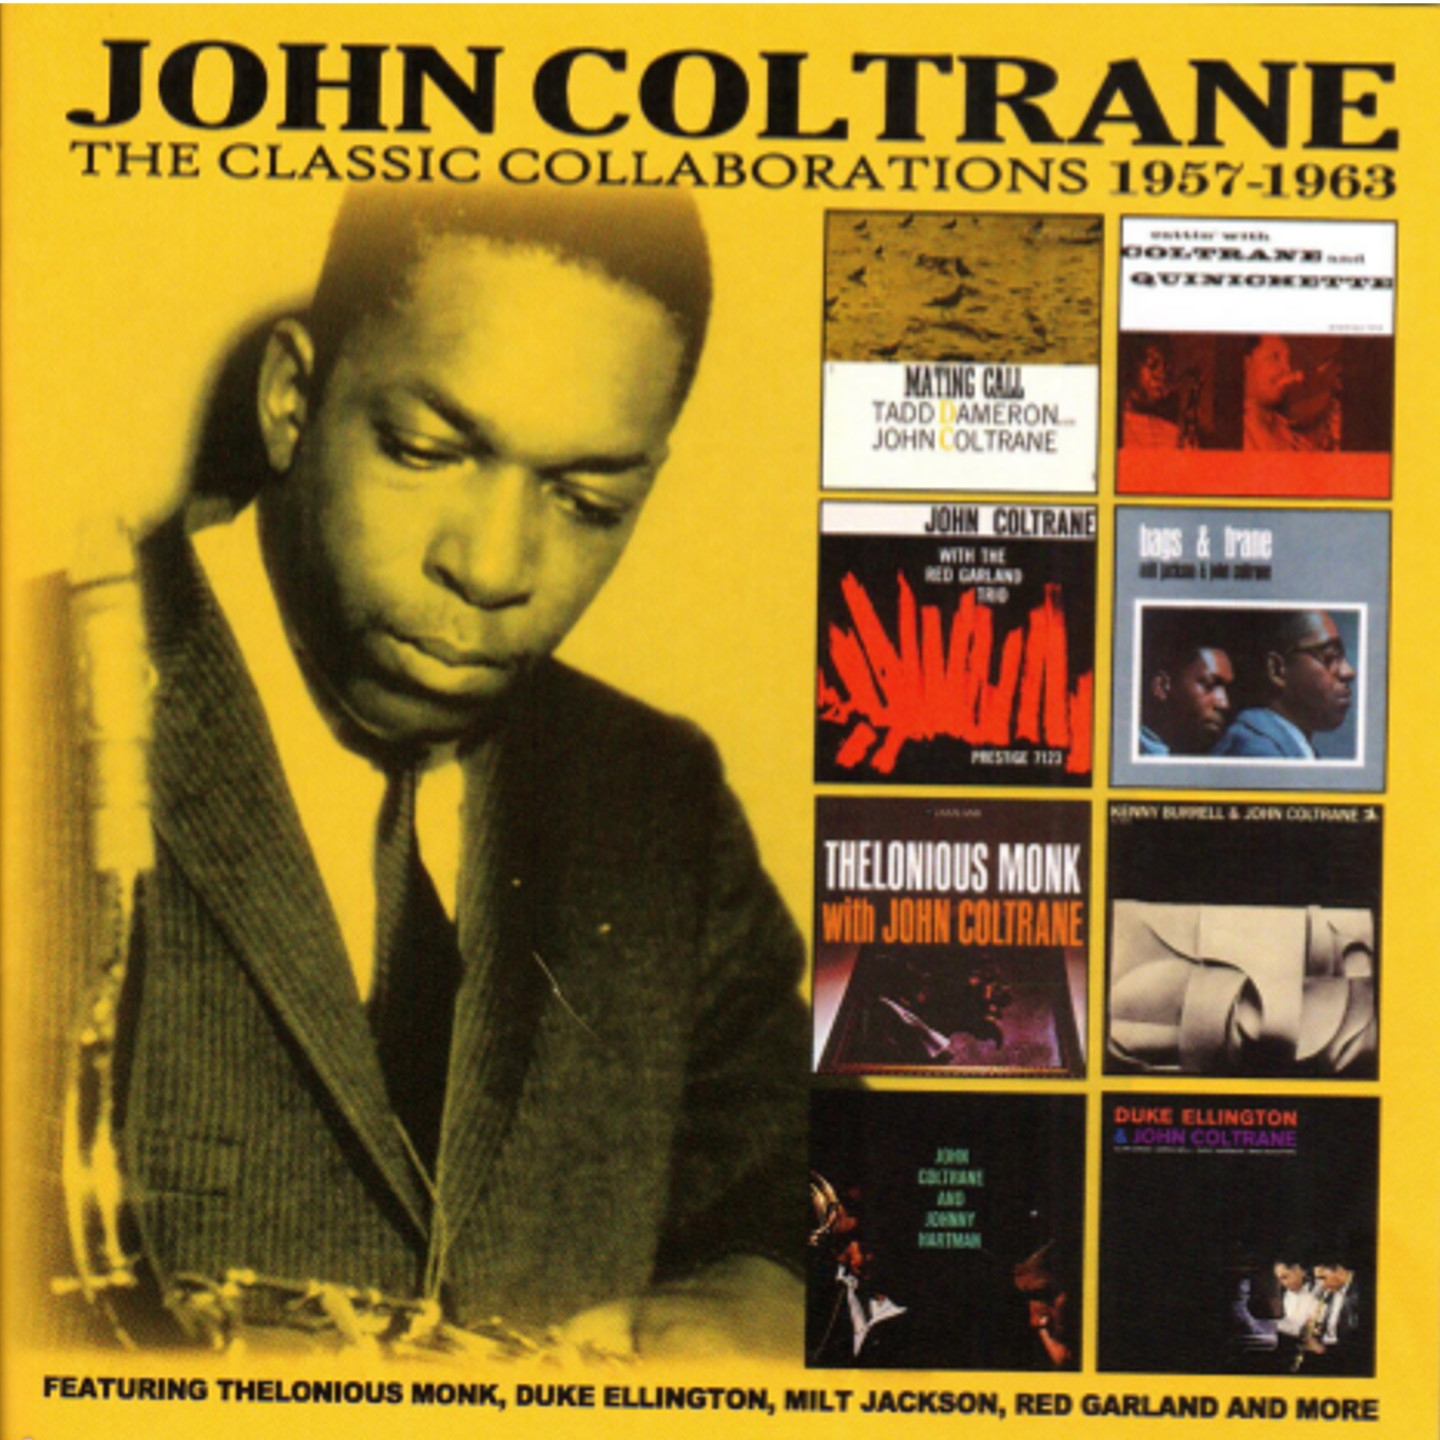 John Coltrane The Classic Collaboration 1957-1963